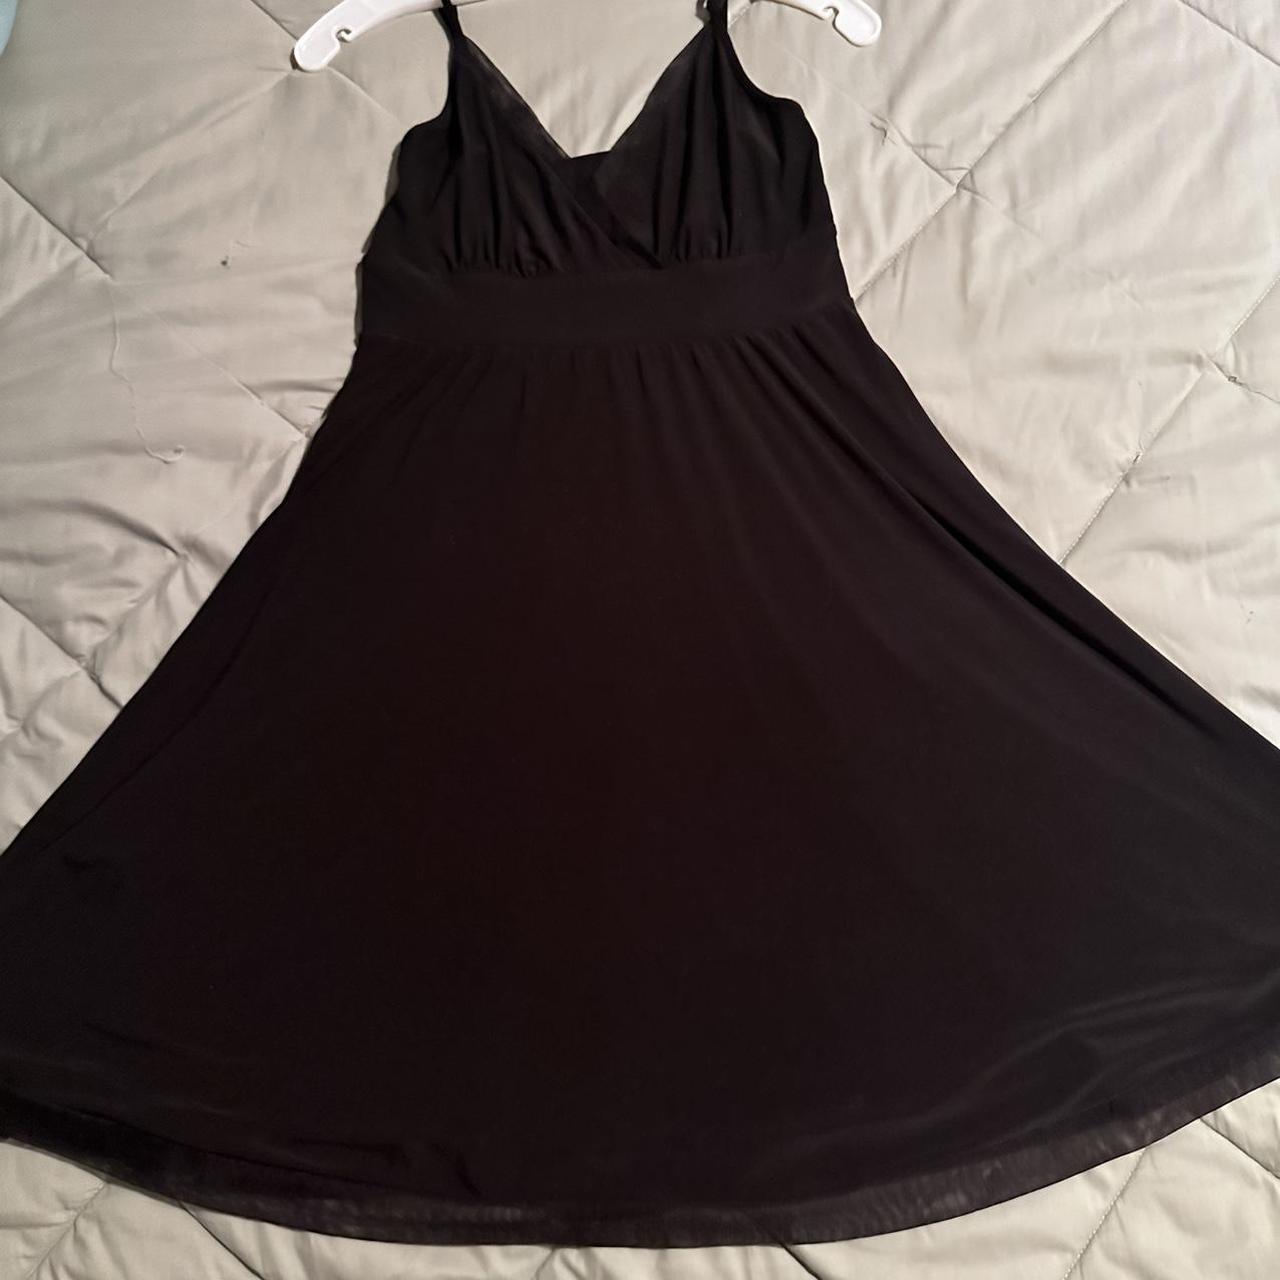 Express Womens Little Black Dress Gorgeous super... - Depop